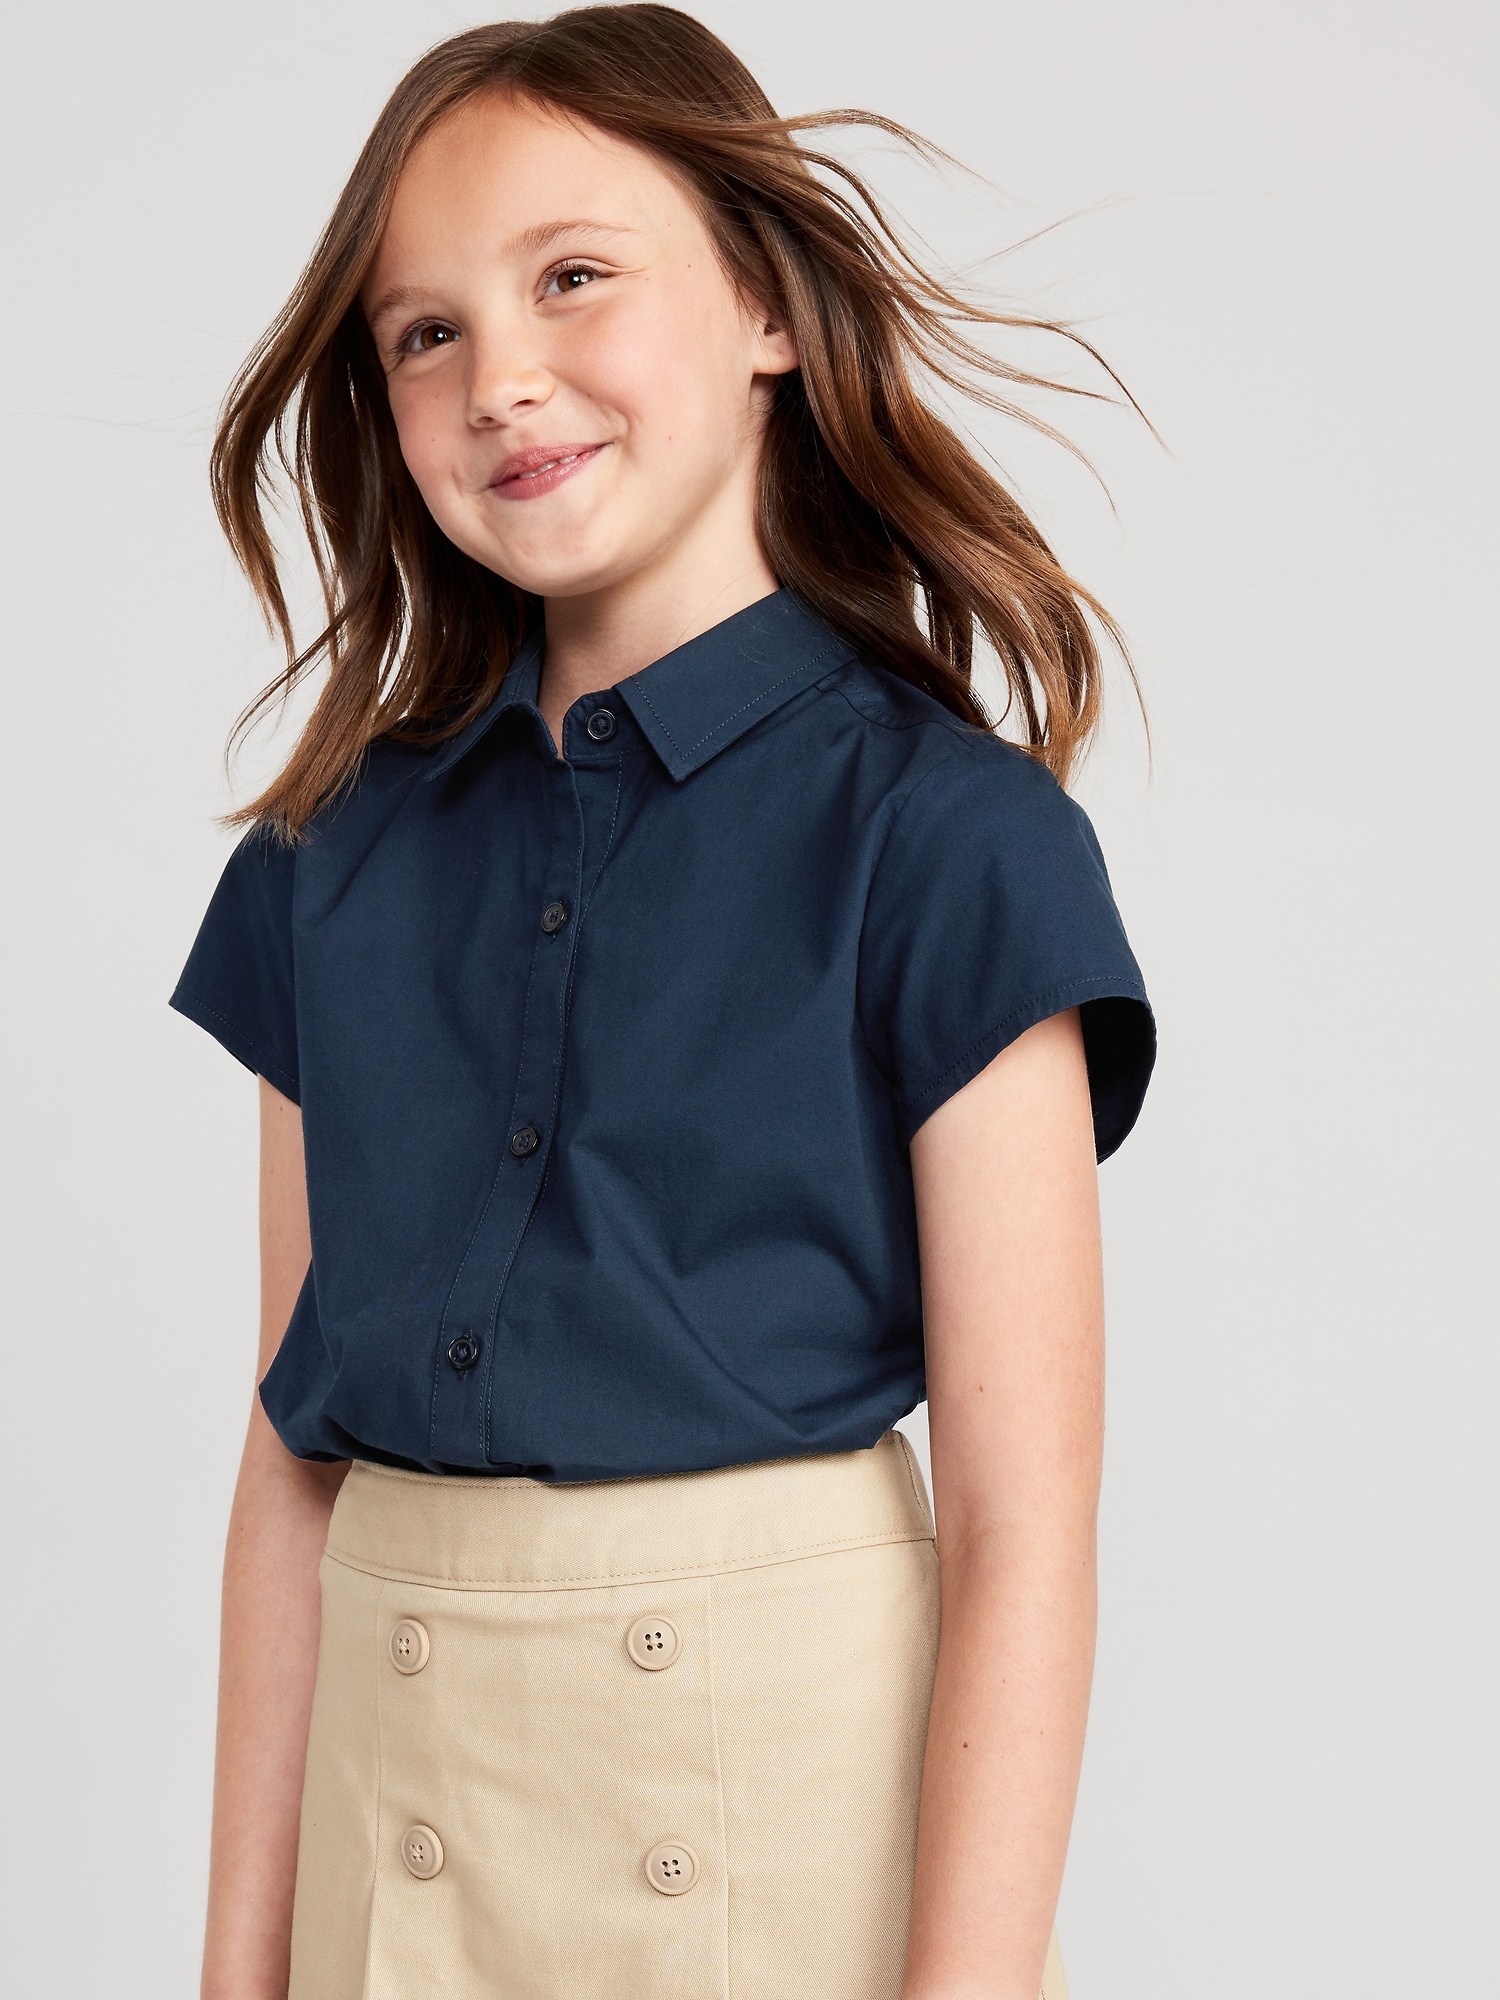 올드네이비 School Uniform Short-Sleeve Shirt for Girls